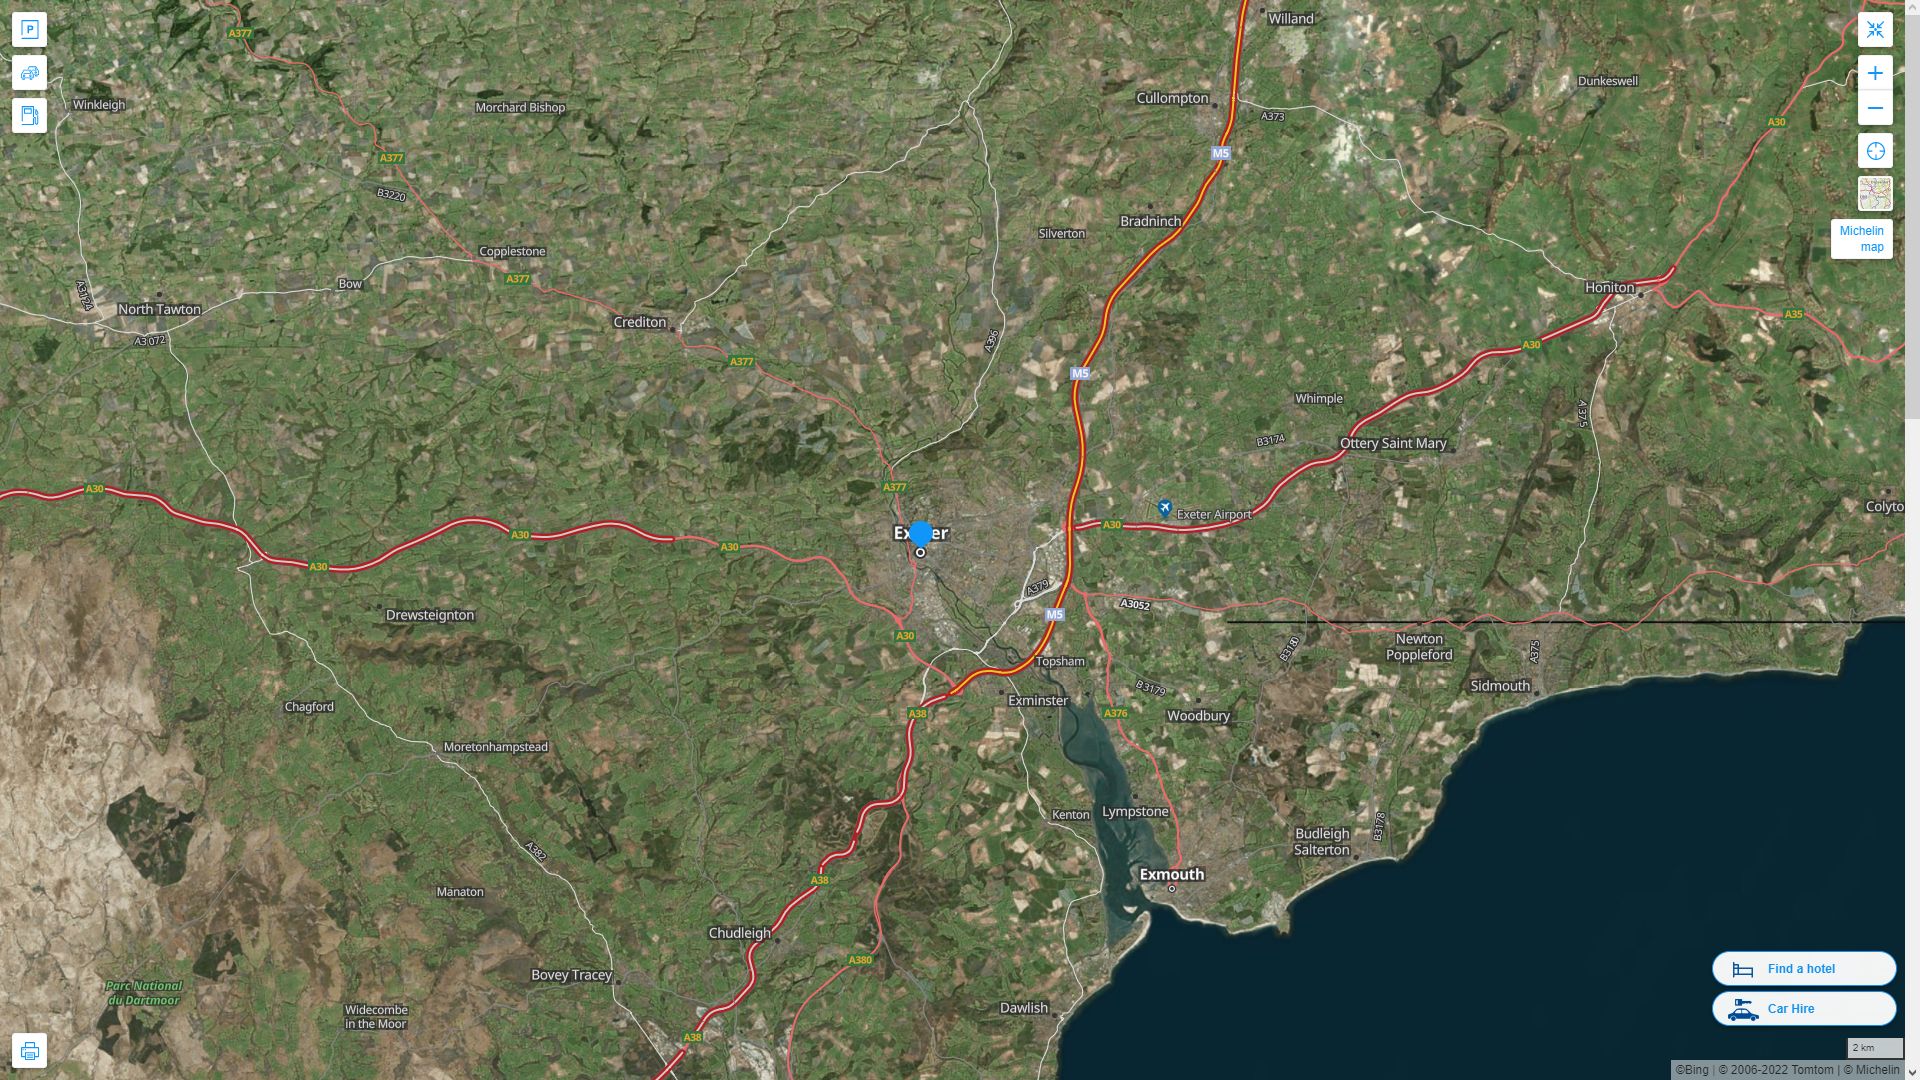 Exeter Royaume Uni Autoroute et carte routiere avec vue satellite